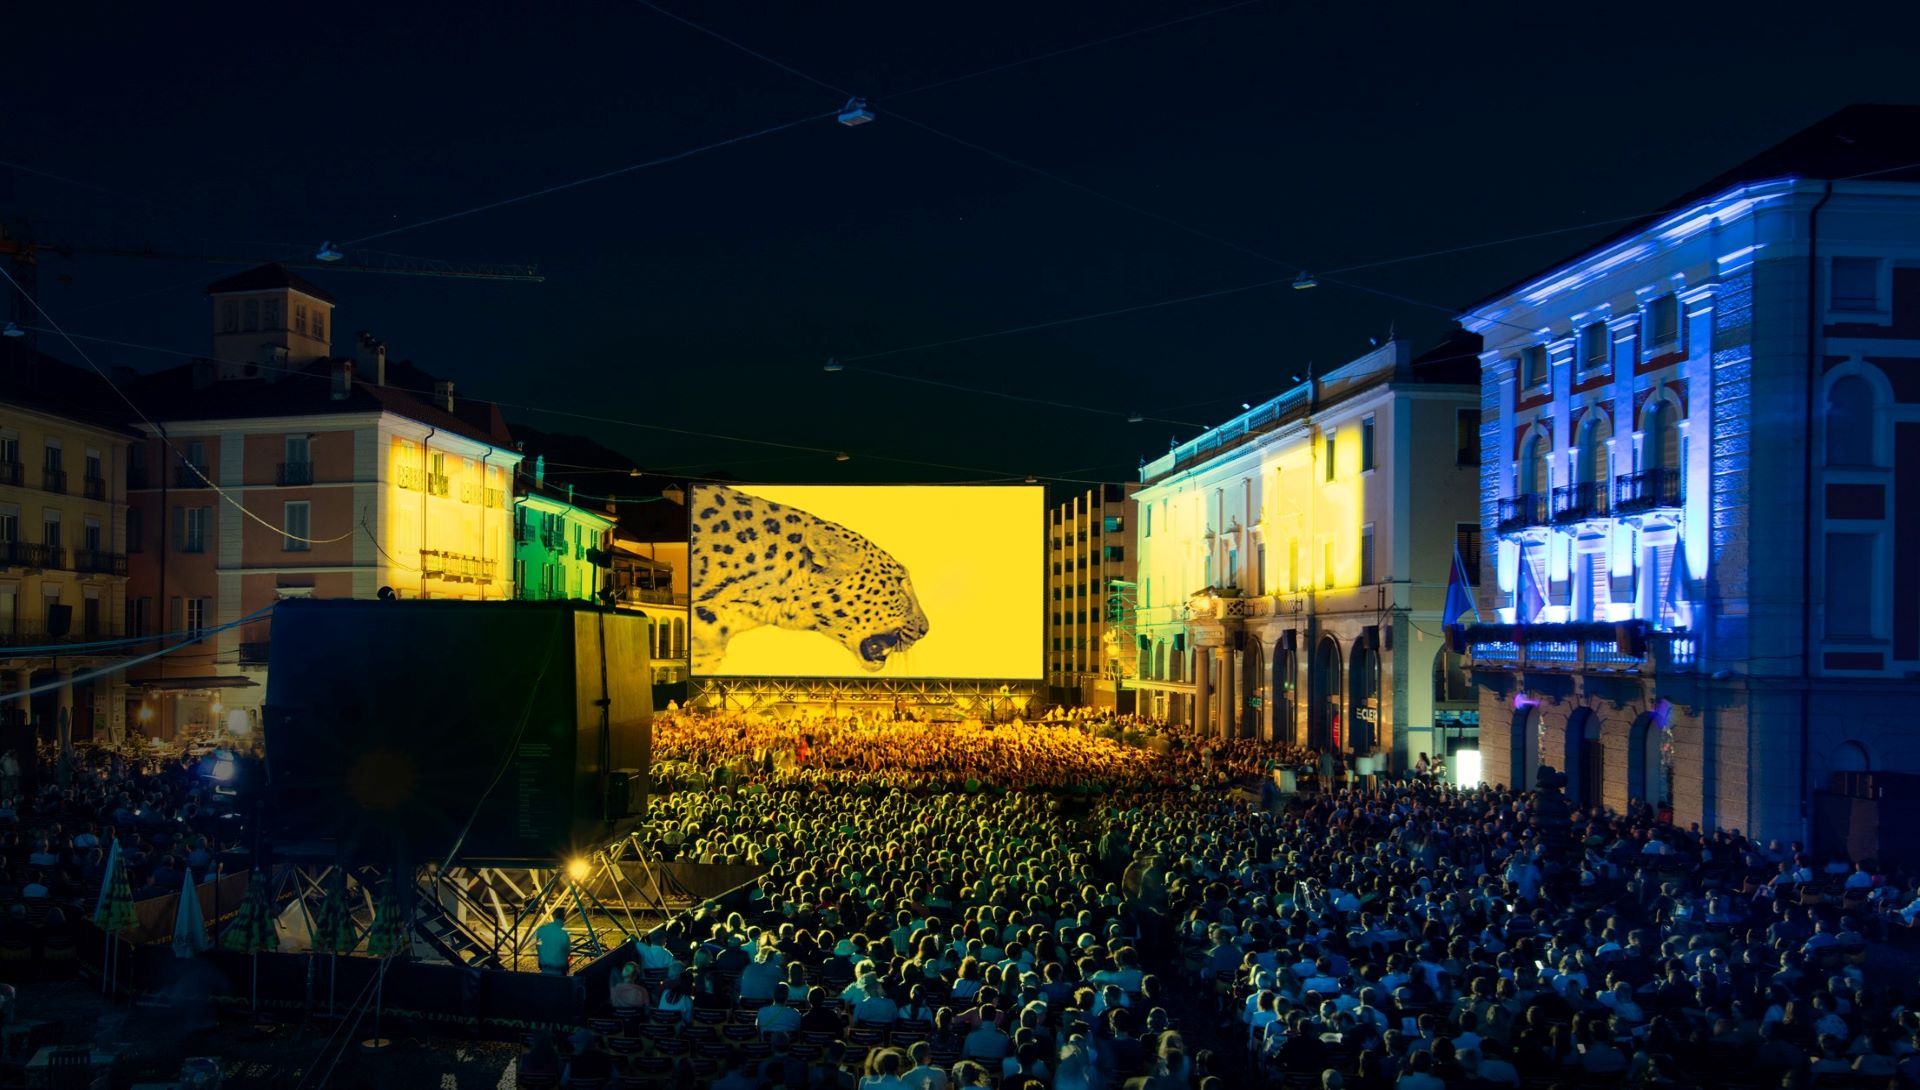 Les projections sur la Piazza Grande reprendront après le hiatus de l'année 2020.